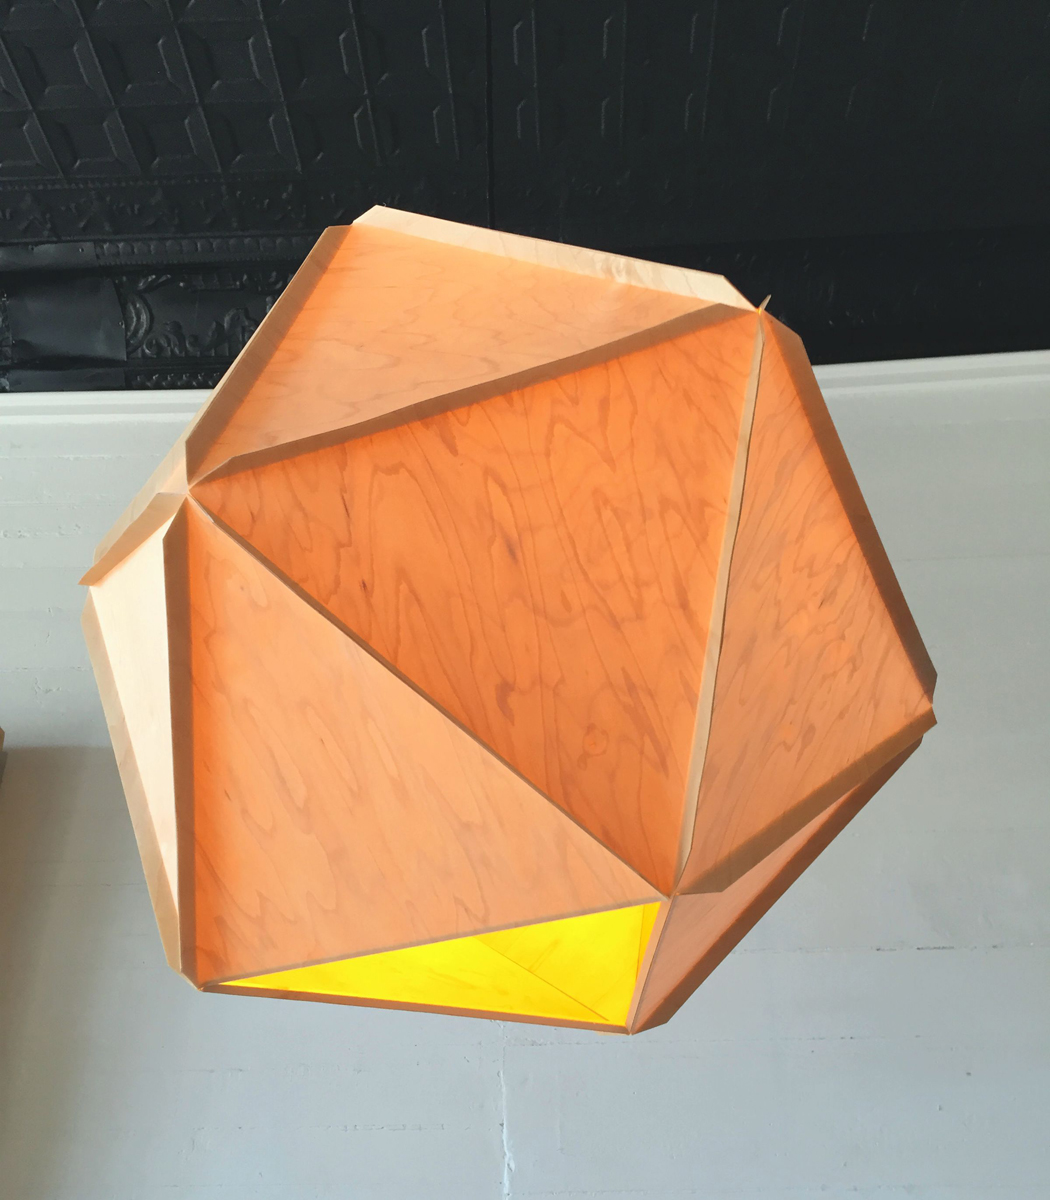 Woodhedron_ES_3.jpg